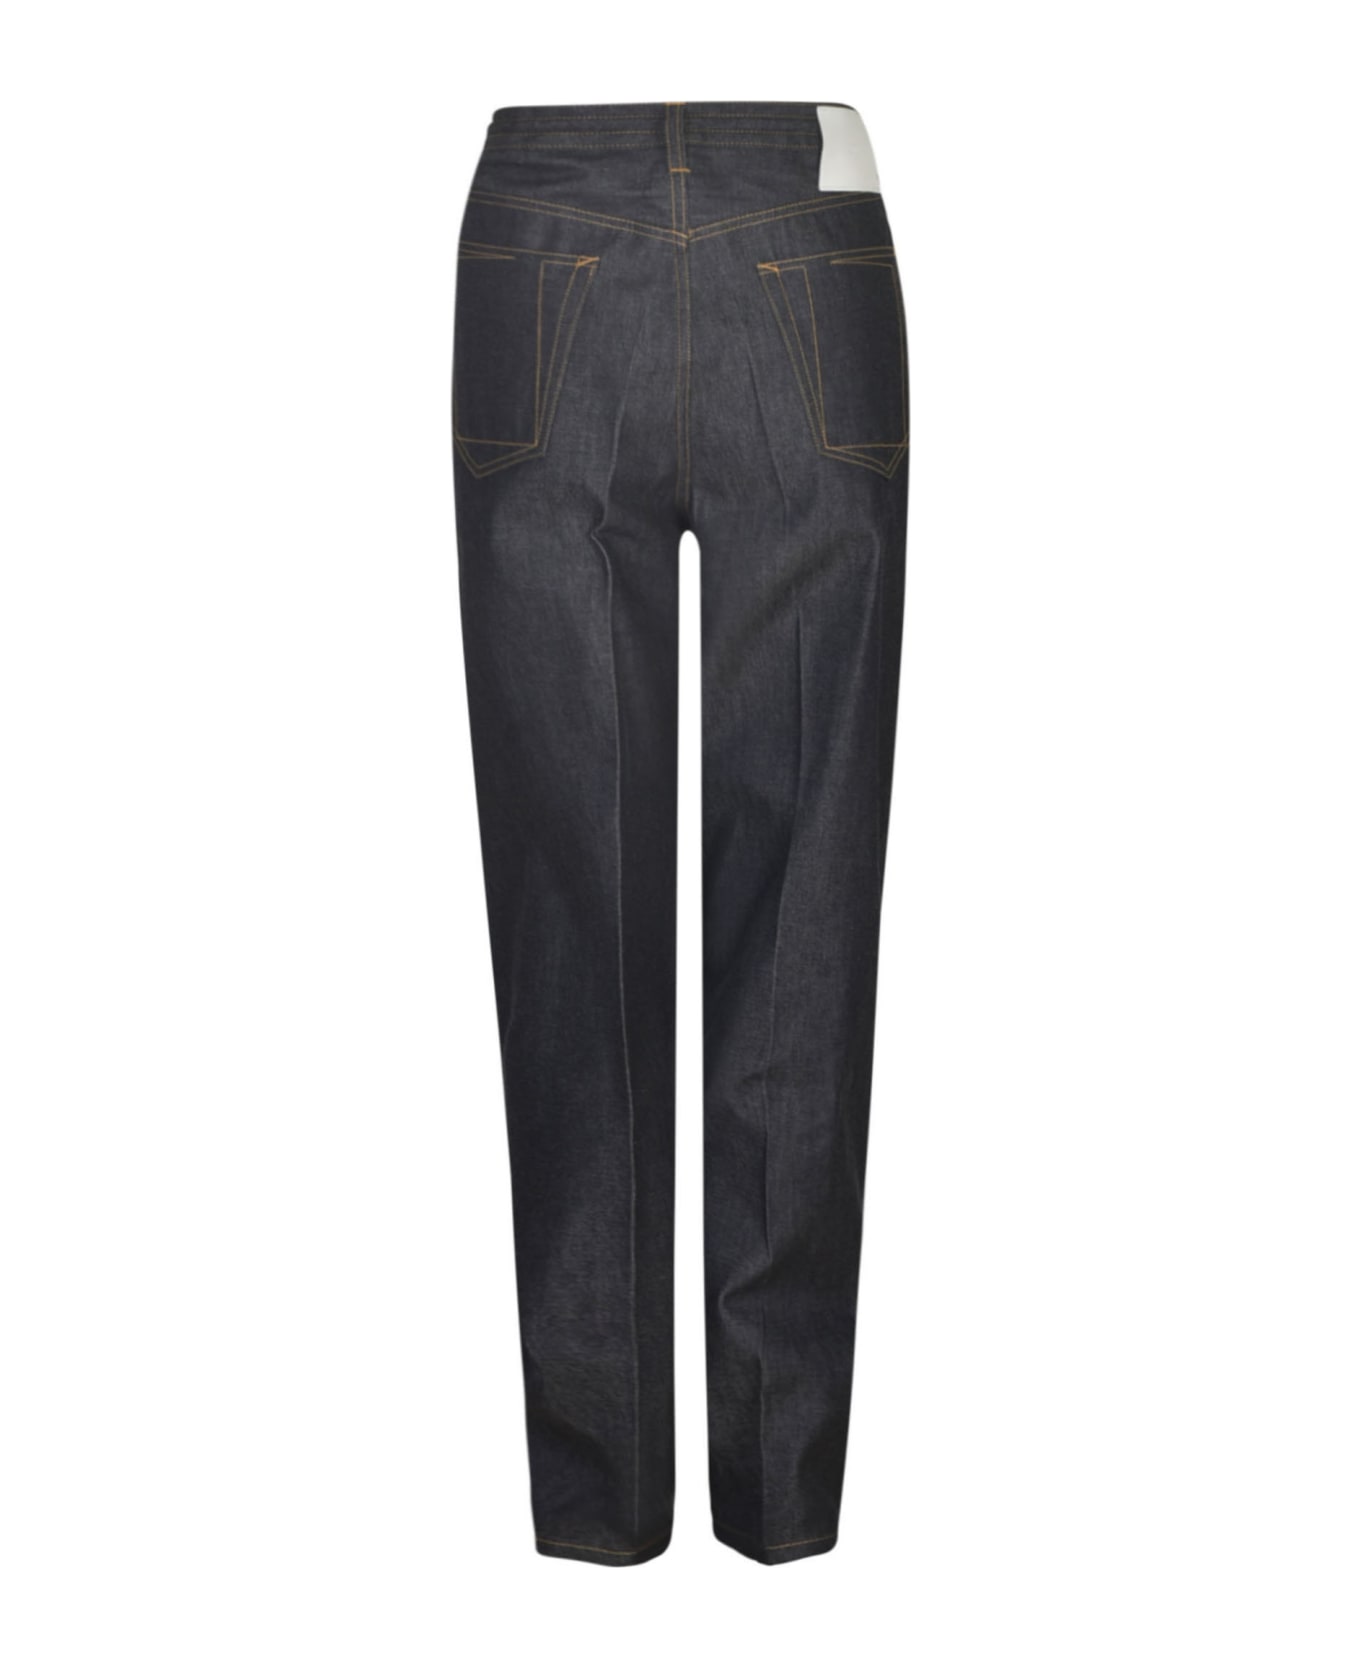 Setchu Long-length Buttoned Jeans - Indigo